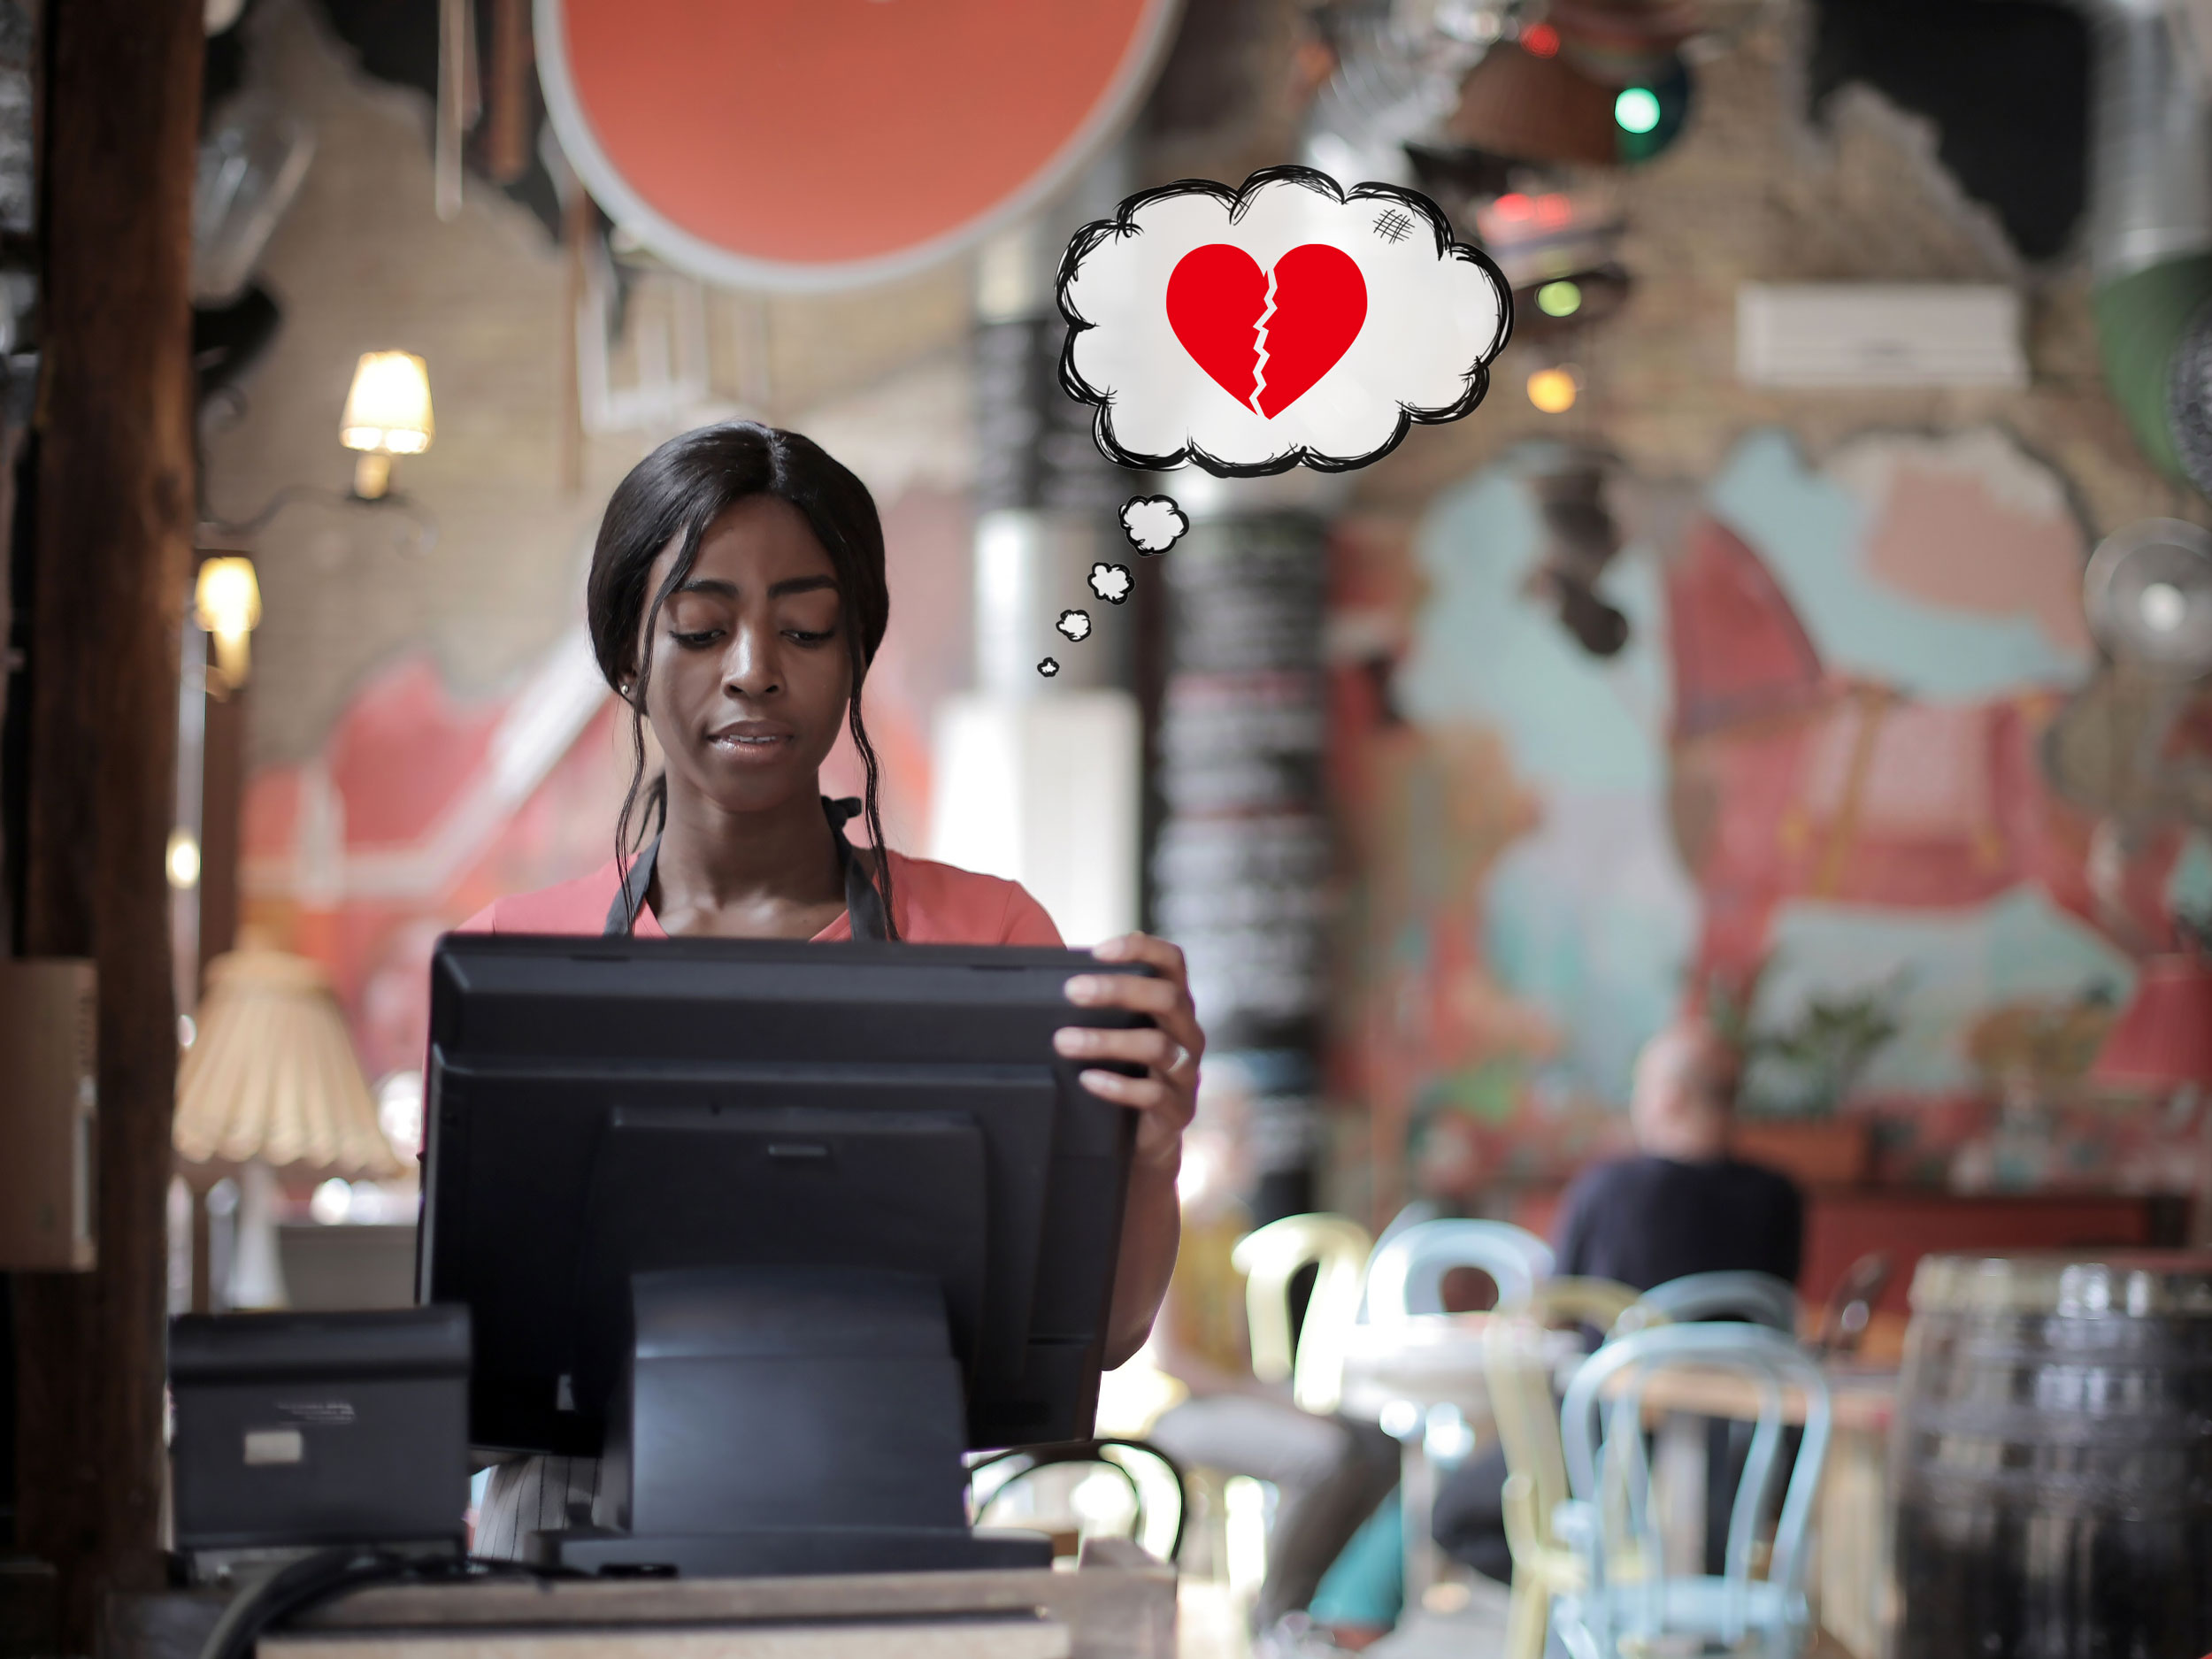 Tamnoputa djevojka stoji za blagajnom u restoranu i zamišljeno gleda u zaslon. U oblačiću pored njene glave je slomljeno crveno srce.